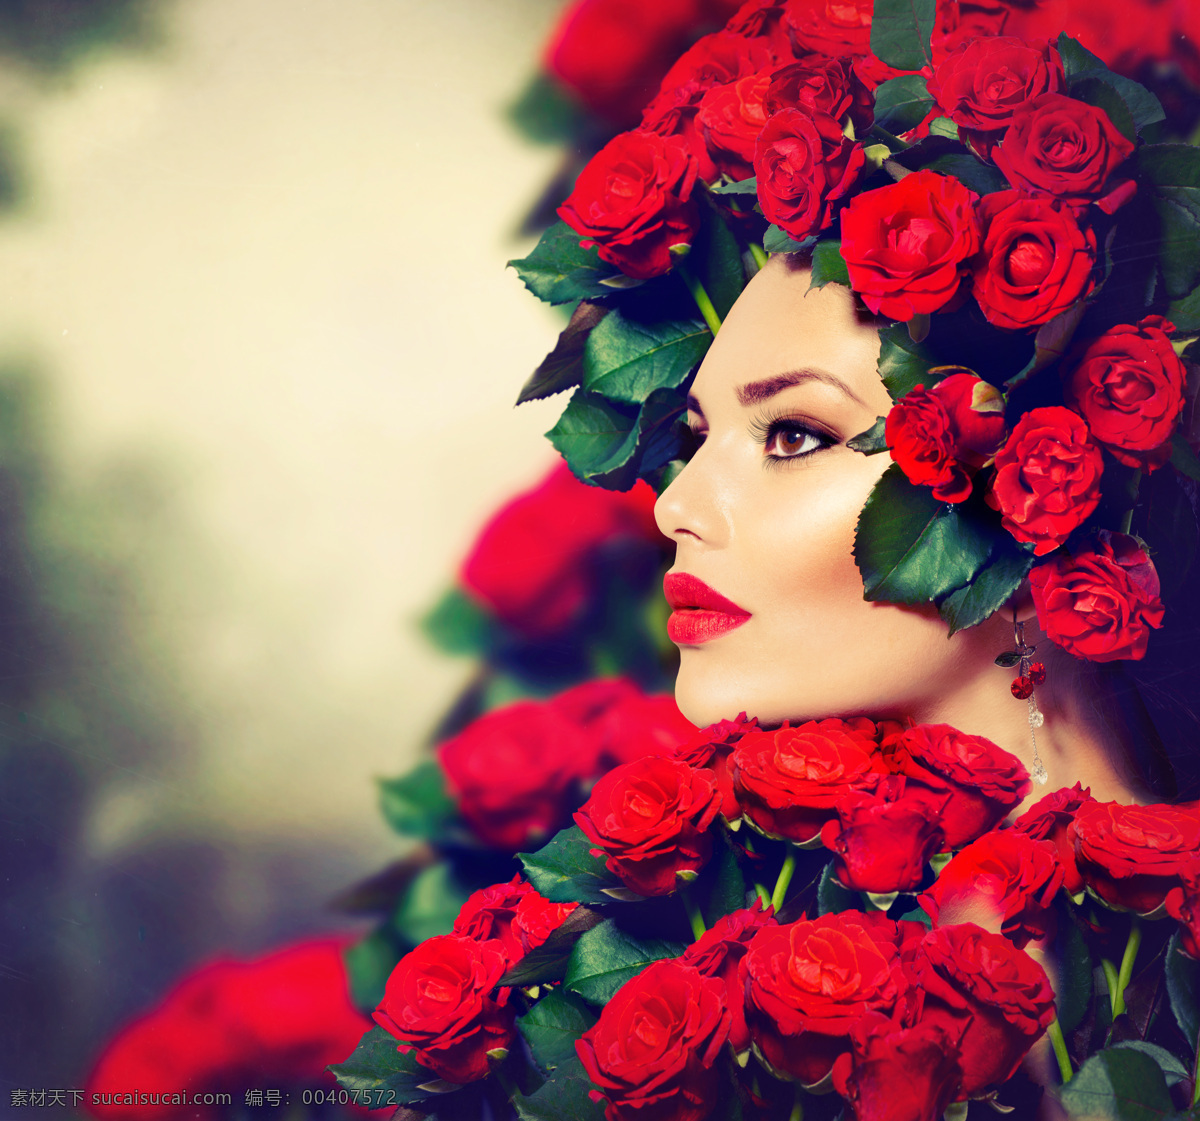 烈焰 红唇 美女 图 玫瑰花环 美女侧面图 红玫瑰 精致 诱惑 美女图片 人物图片